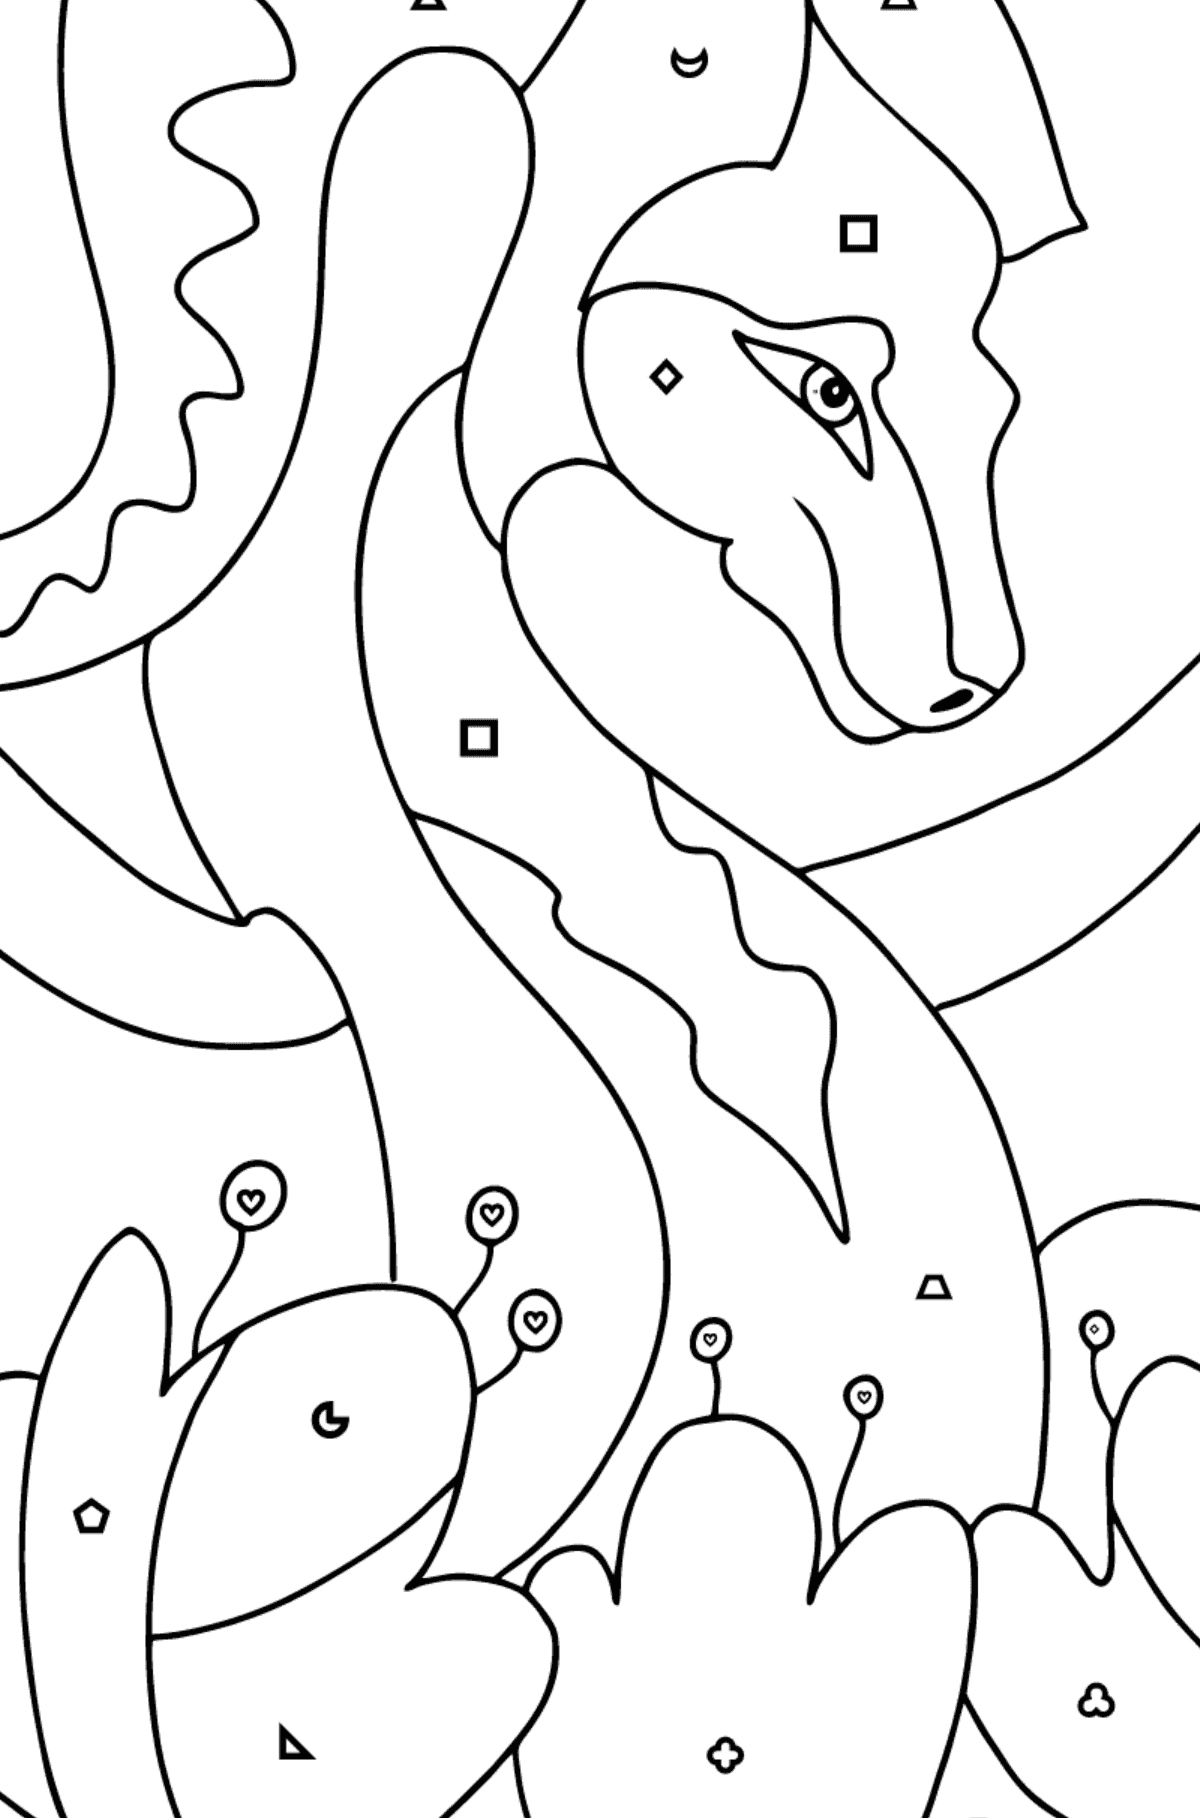 Dibujo para colorear dragón colorido (difícil) - Colorear por Formas Geométricas para Niños